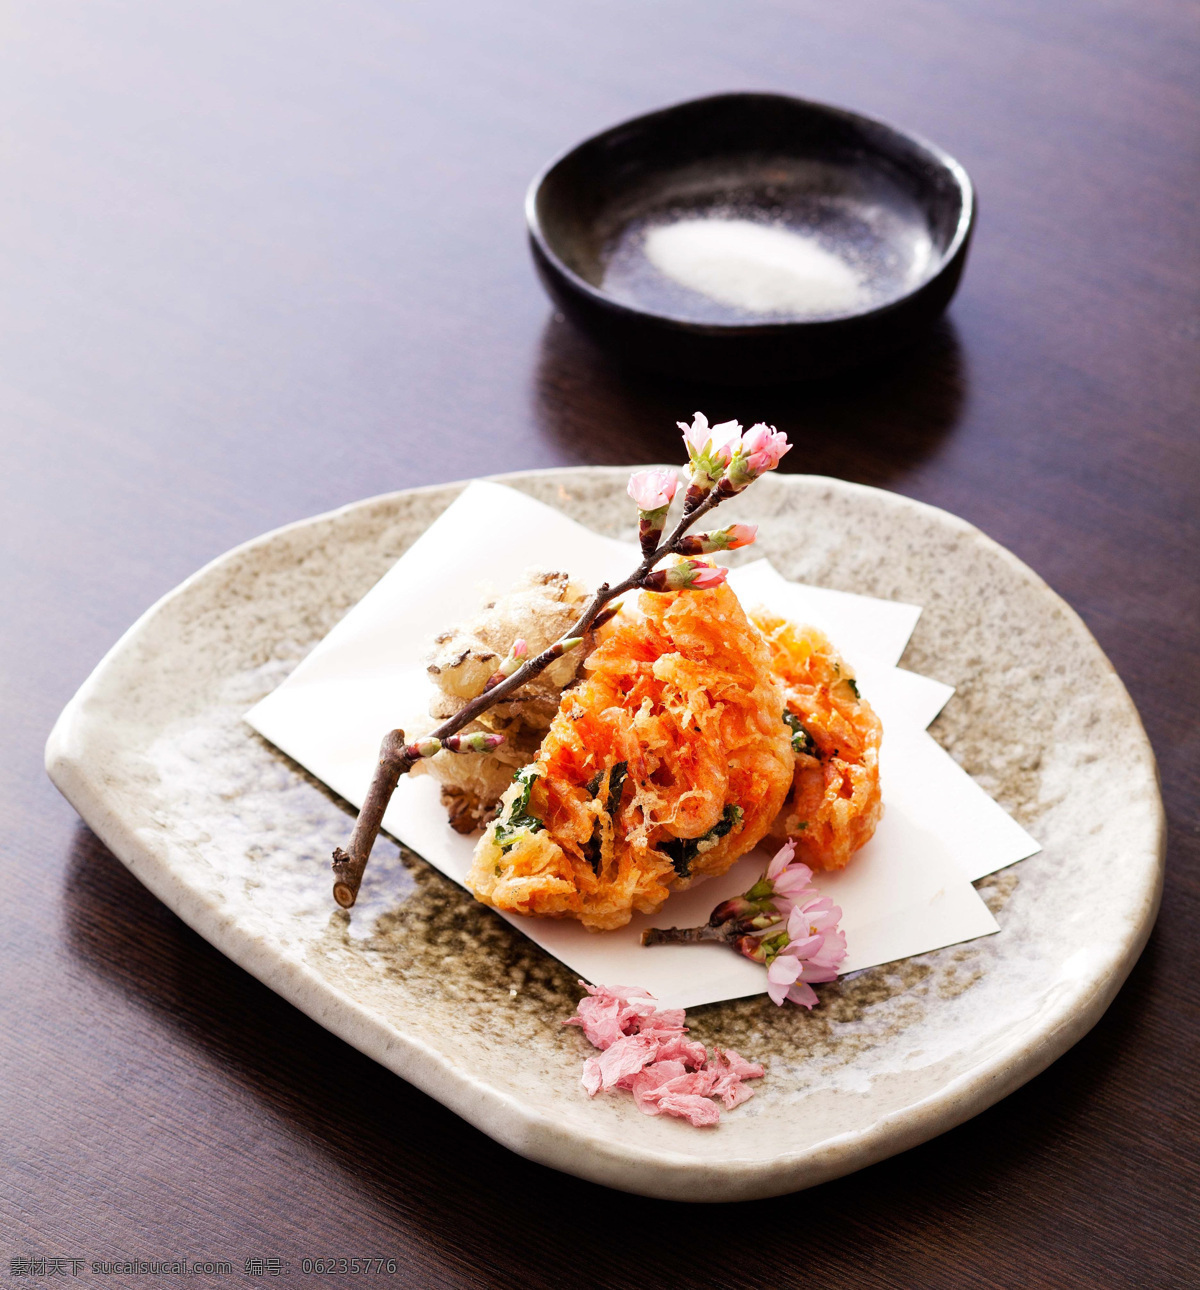 樱花 樱花虾 虾 油炸樱花虾 炸樱花虾 餐饮美食 传统美食